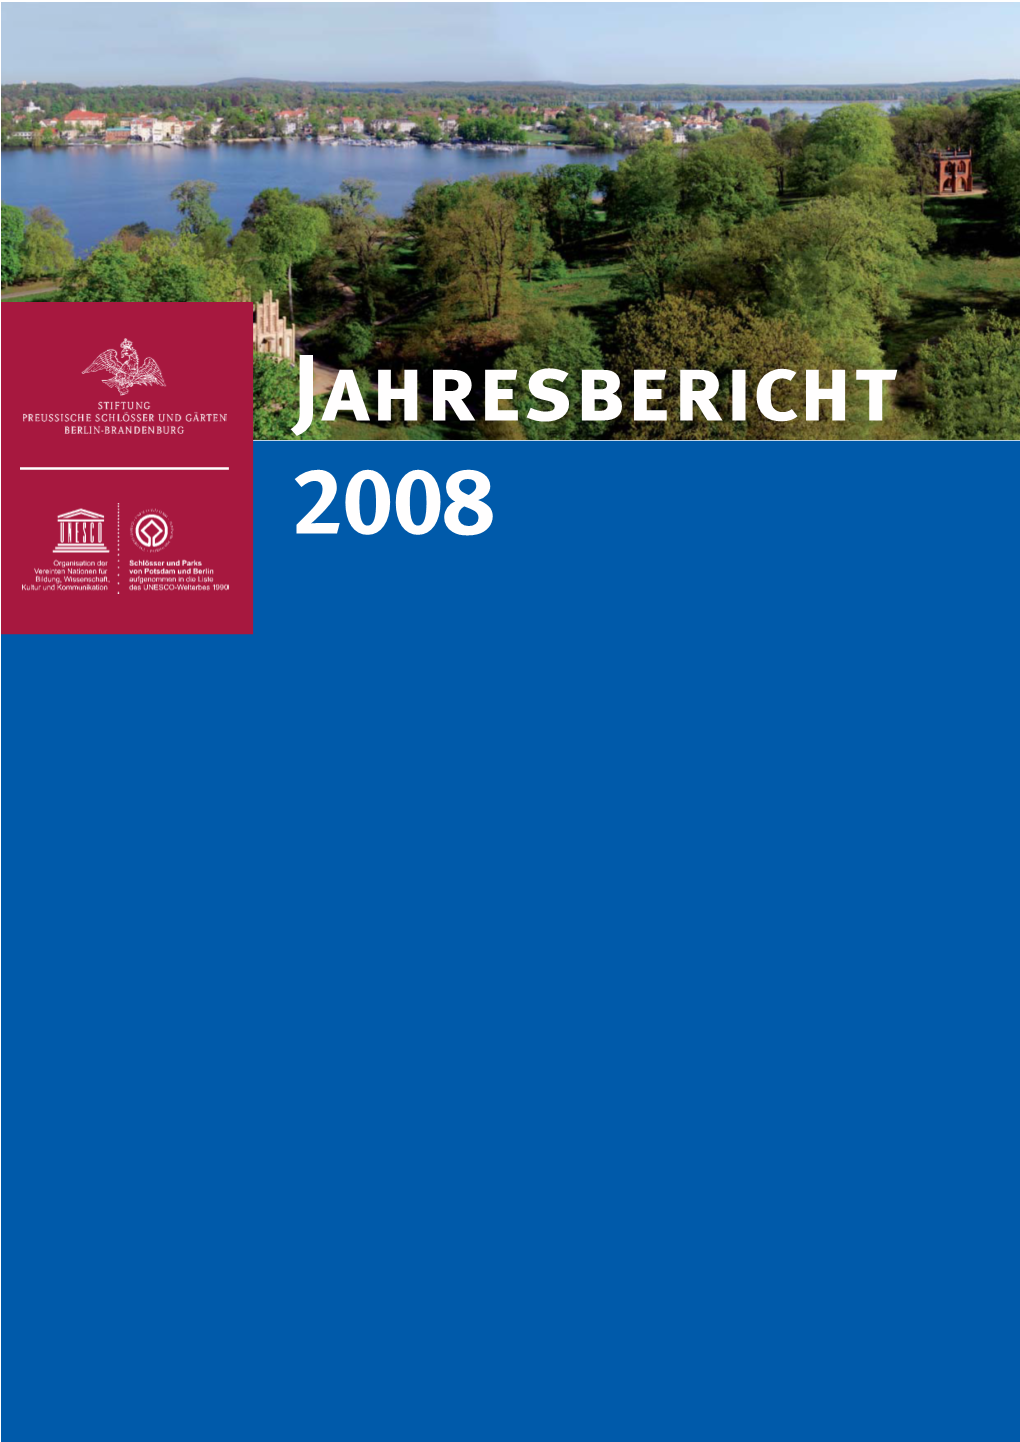 SPSG-Jahresbericht 2008